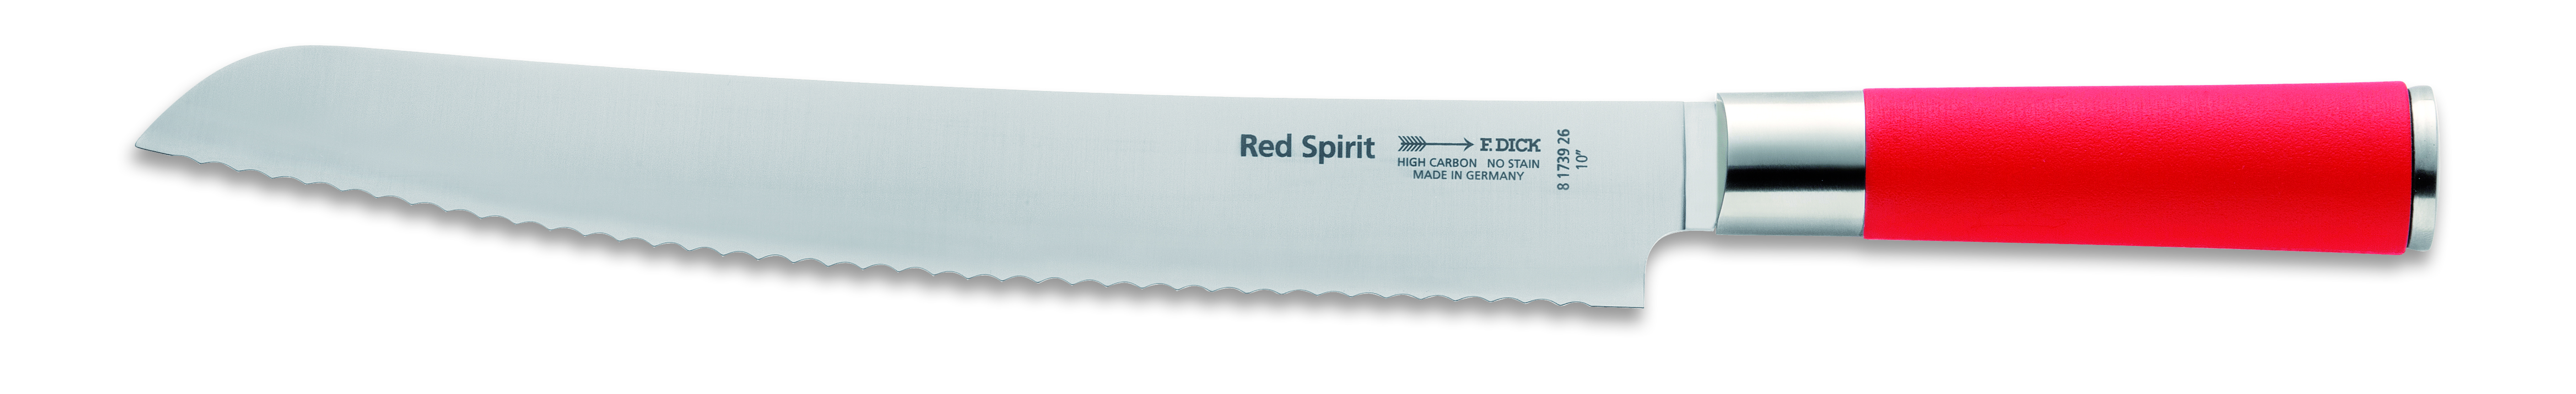 DICK Brotmesser, Wellenschliff, 26 cm, Red Spirit